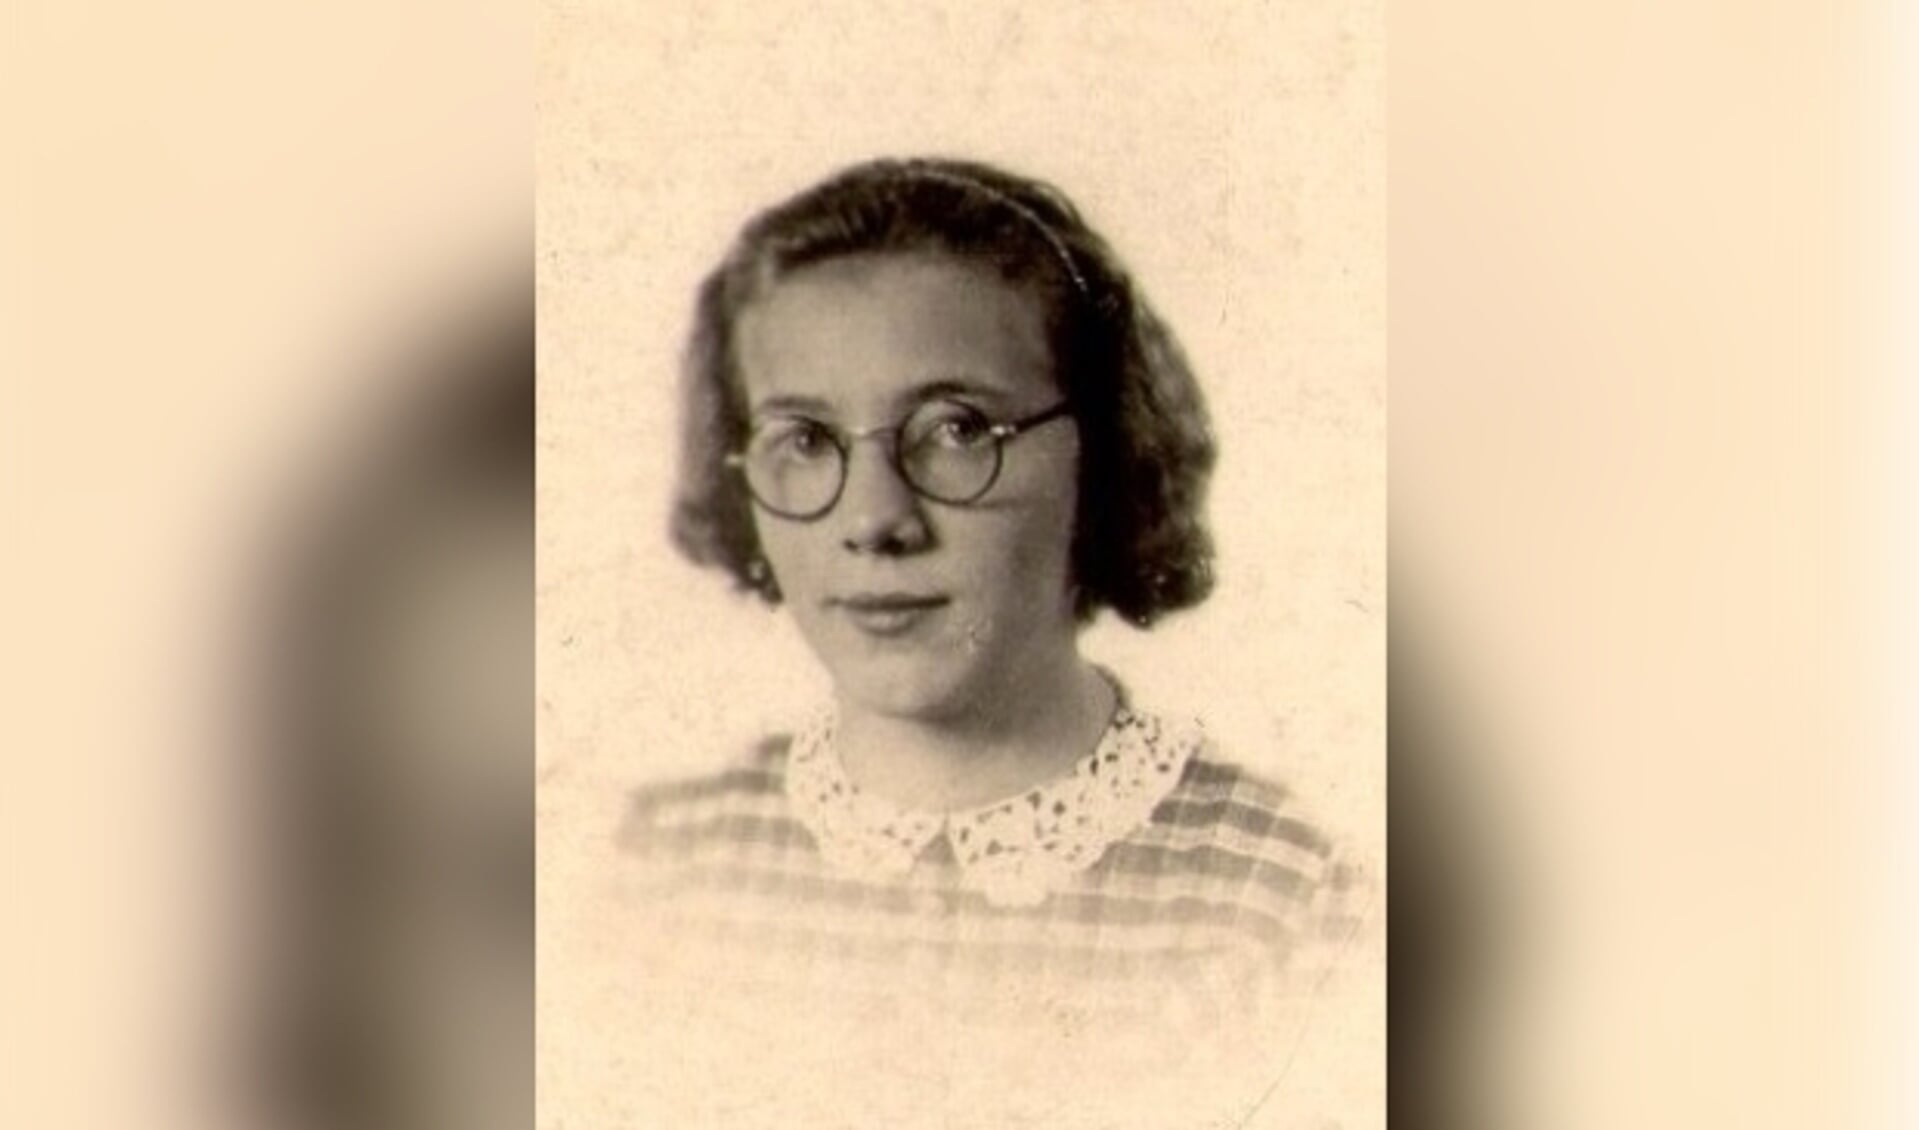 ndrika Gerarda MriaHendrika Gerarda Maria van der Spek overleed op 18-jarige leeftijd op 20 oktober 1941 bij een bombardement in Berkel en Rodenrijs.